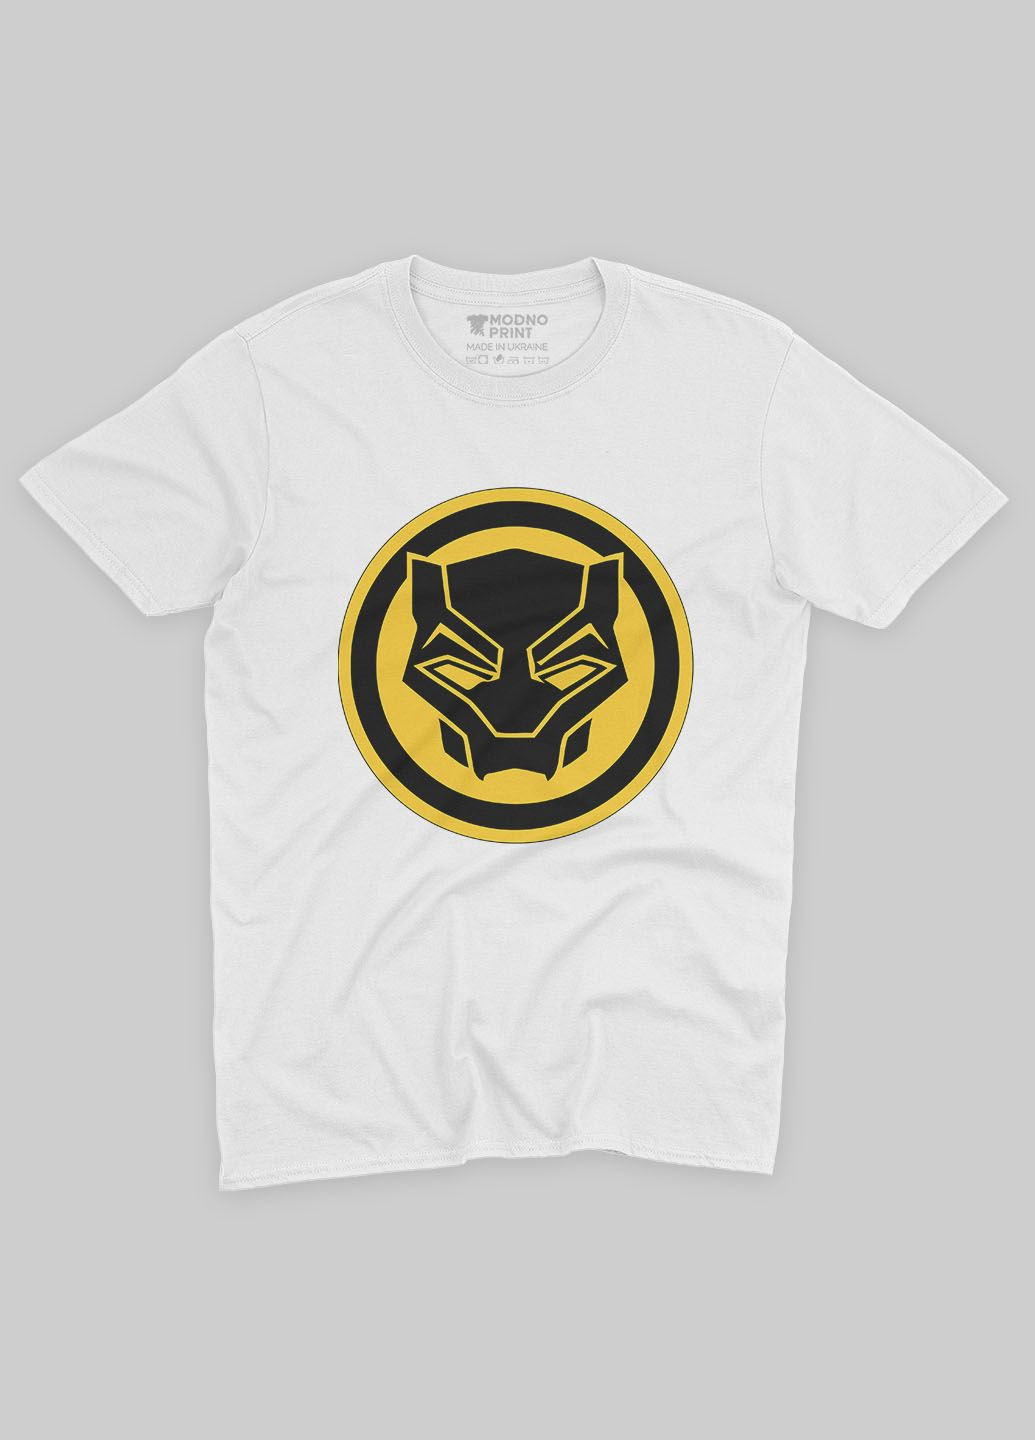 Белая демисезонная футболка для мальчика с принтом супергероя - черная пантера (ts001-1-whi-006-027-004-b) Modno